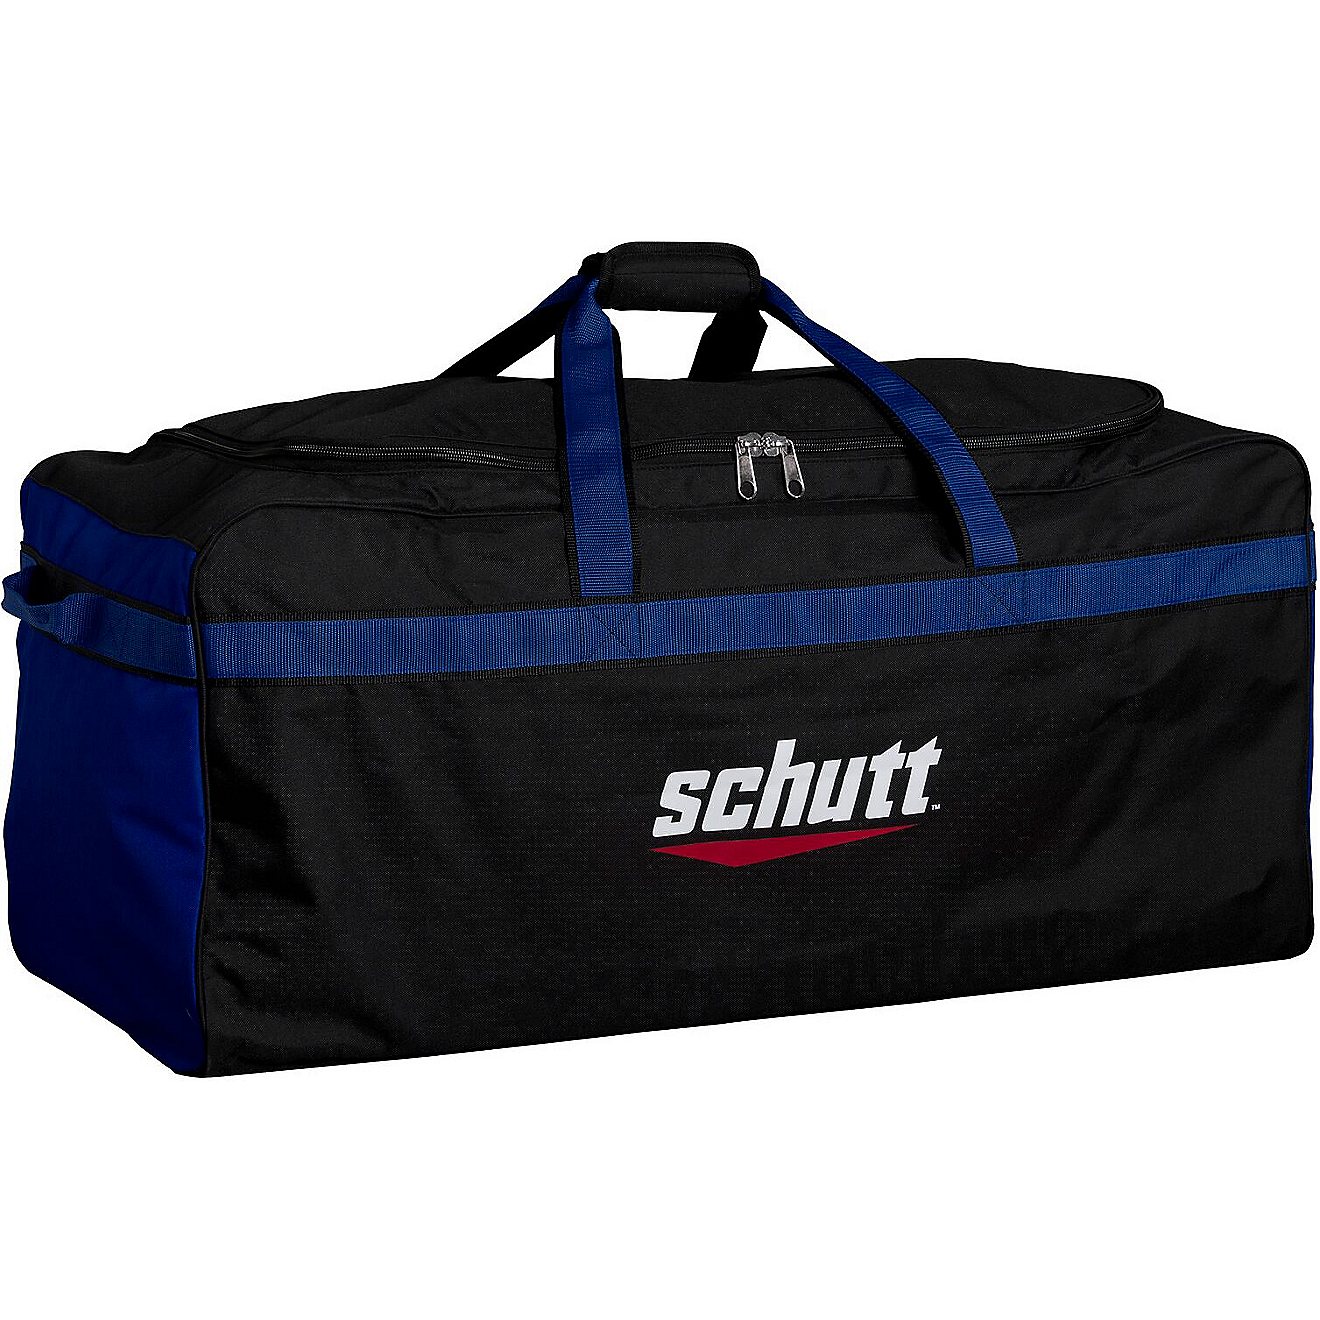 Schutt Large Team Equipment Bag                                                                                                  - view number 1